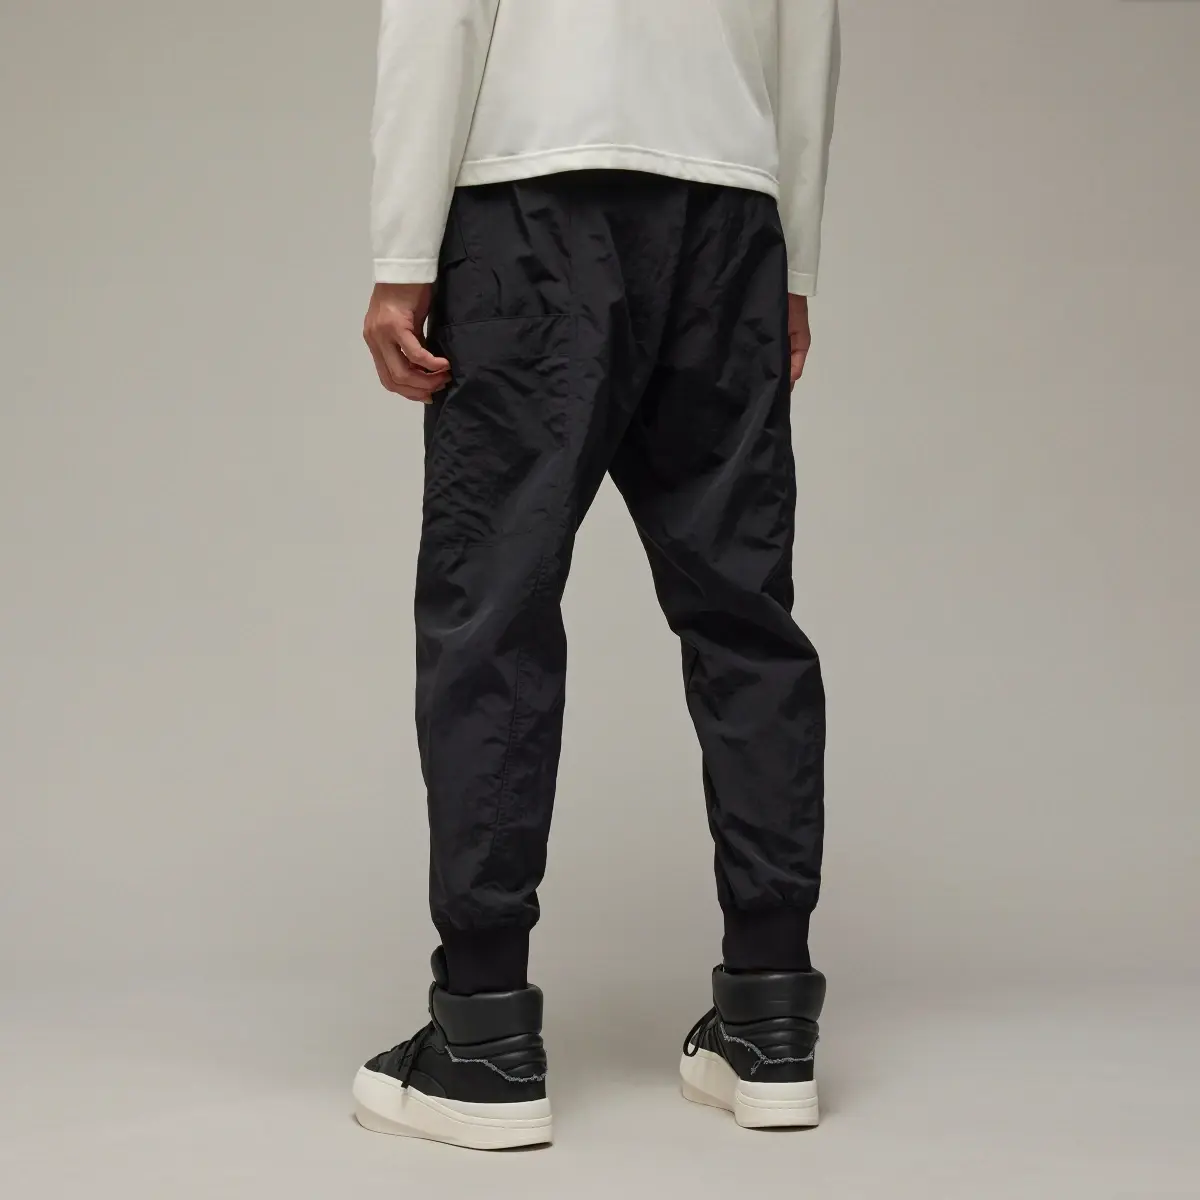 Adidas Y-3 Crinkle Nylon Cuffed Pants. 3